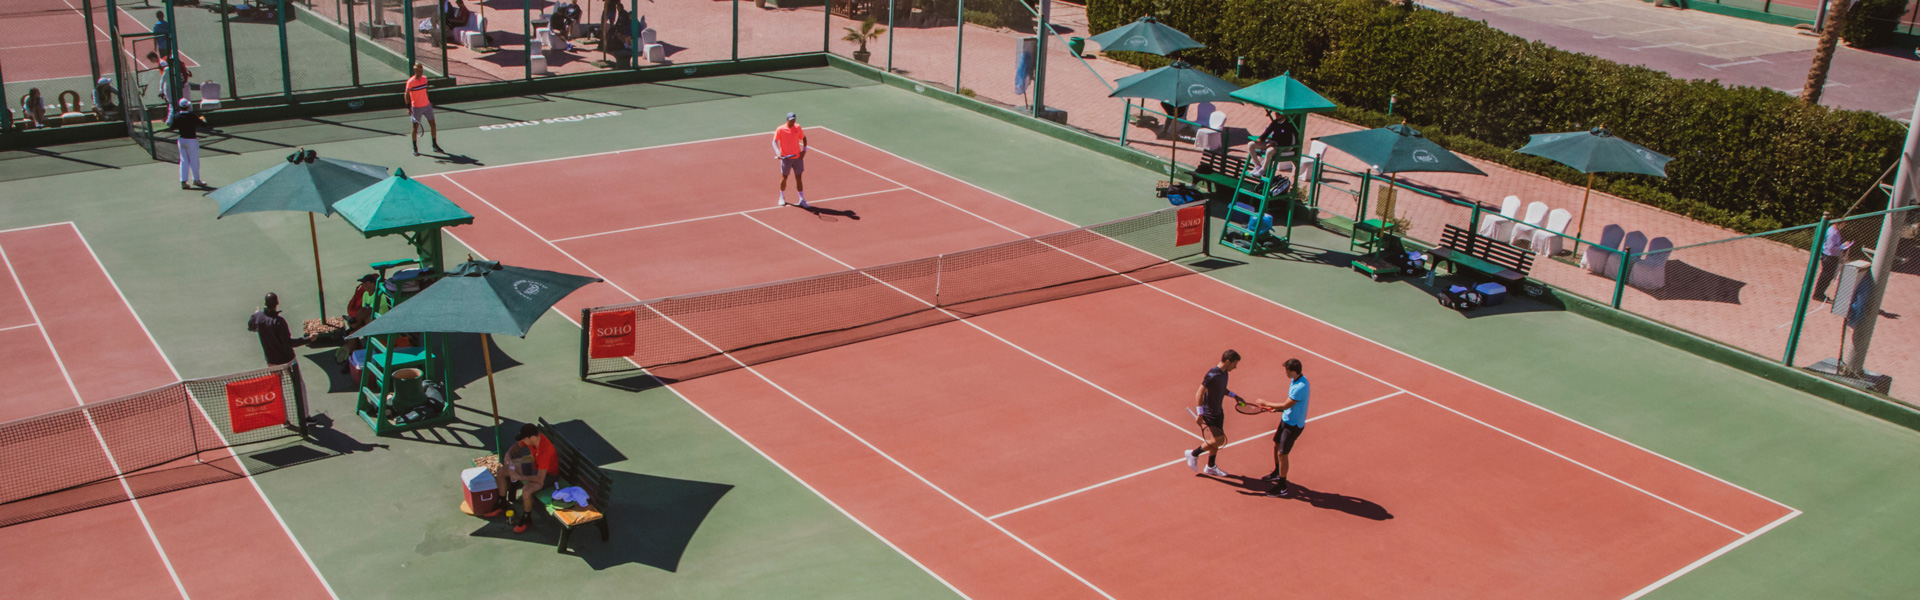 Tennis & Squash Center